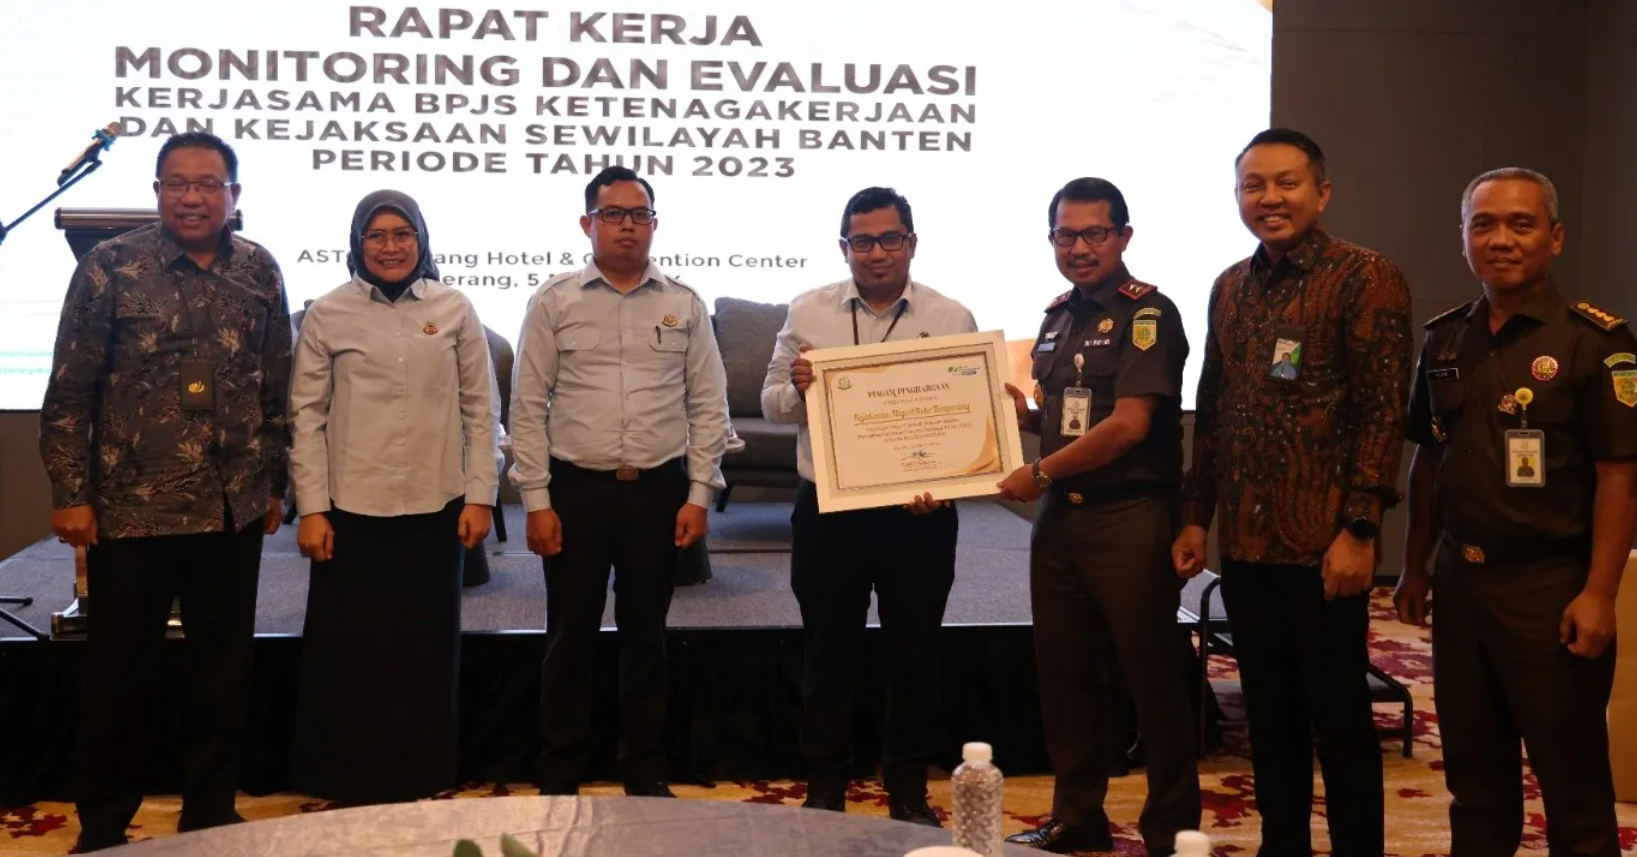 Datun Kejari Kota Tangerang Berhasil Tagih Piutang BPJS Ketenagakerjaan Rp 20,29 Miliar